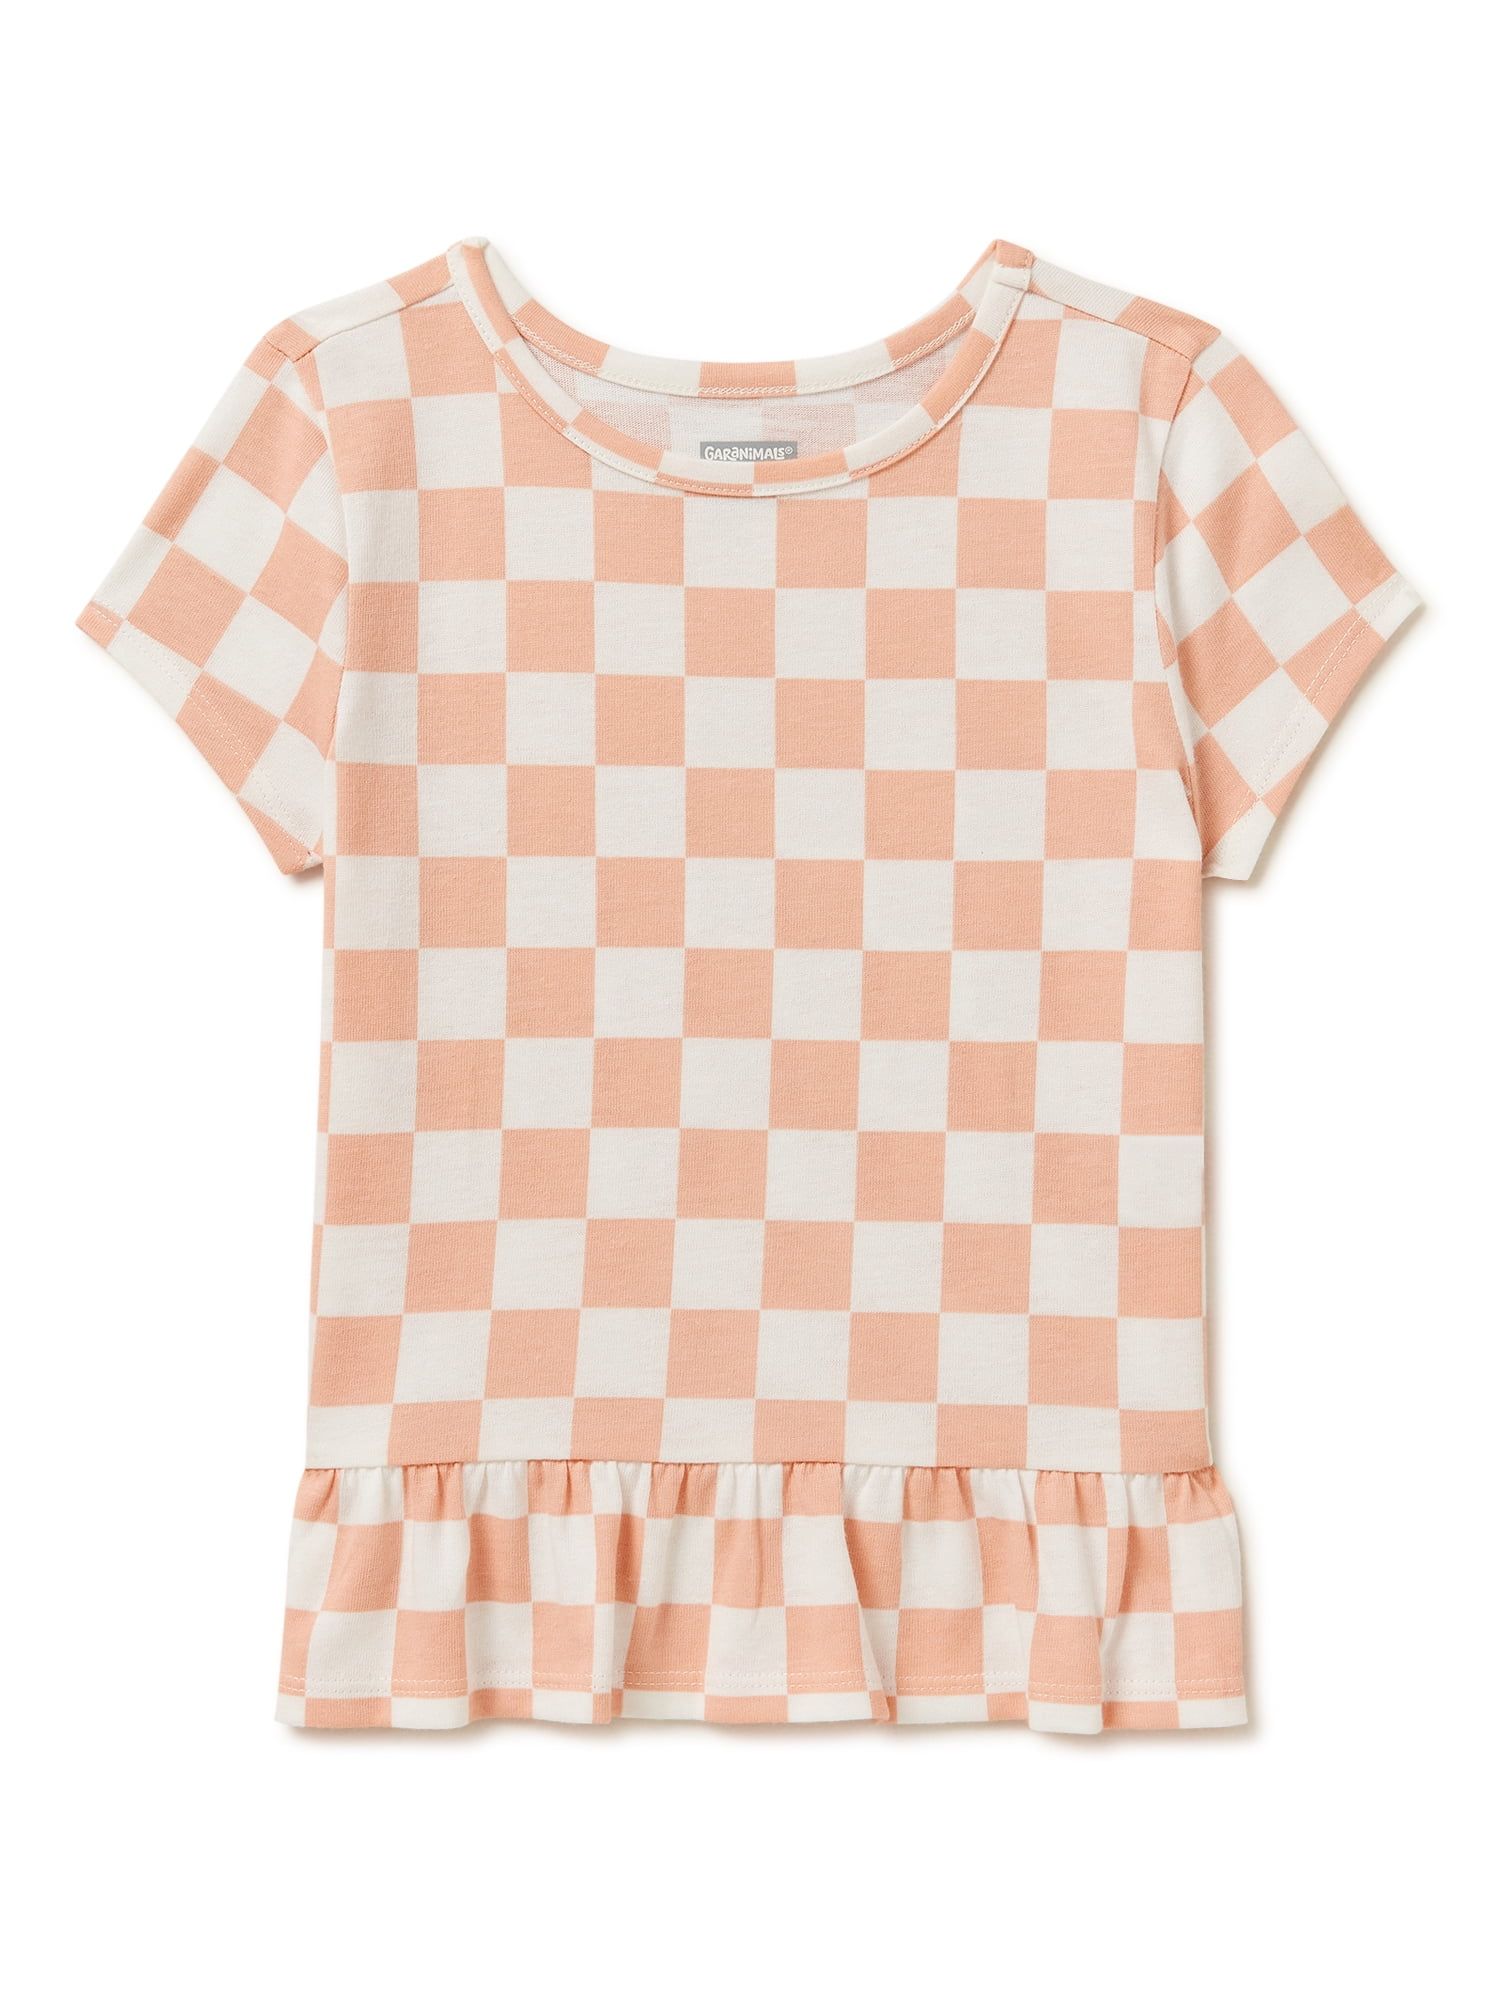 Garanimals Toddler Girls Short Sleeve Peplum Tee, Sizes 12 Months-5T - Walmart.com | Walmart (US)